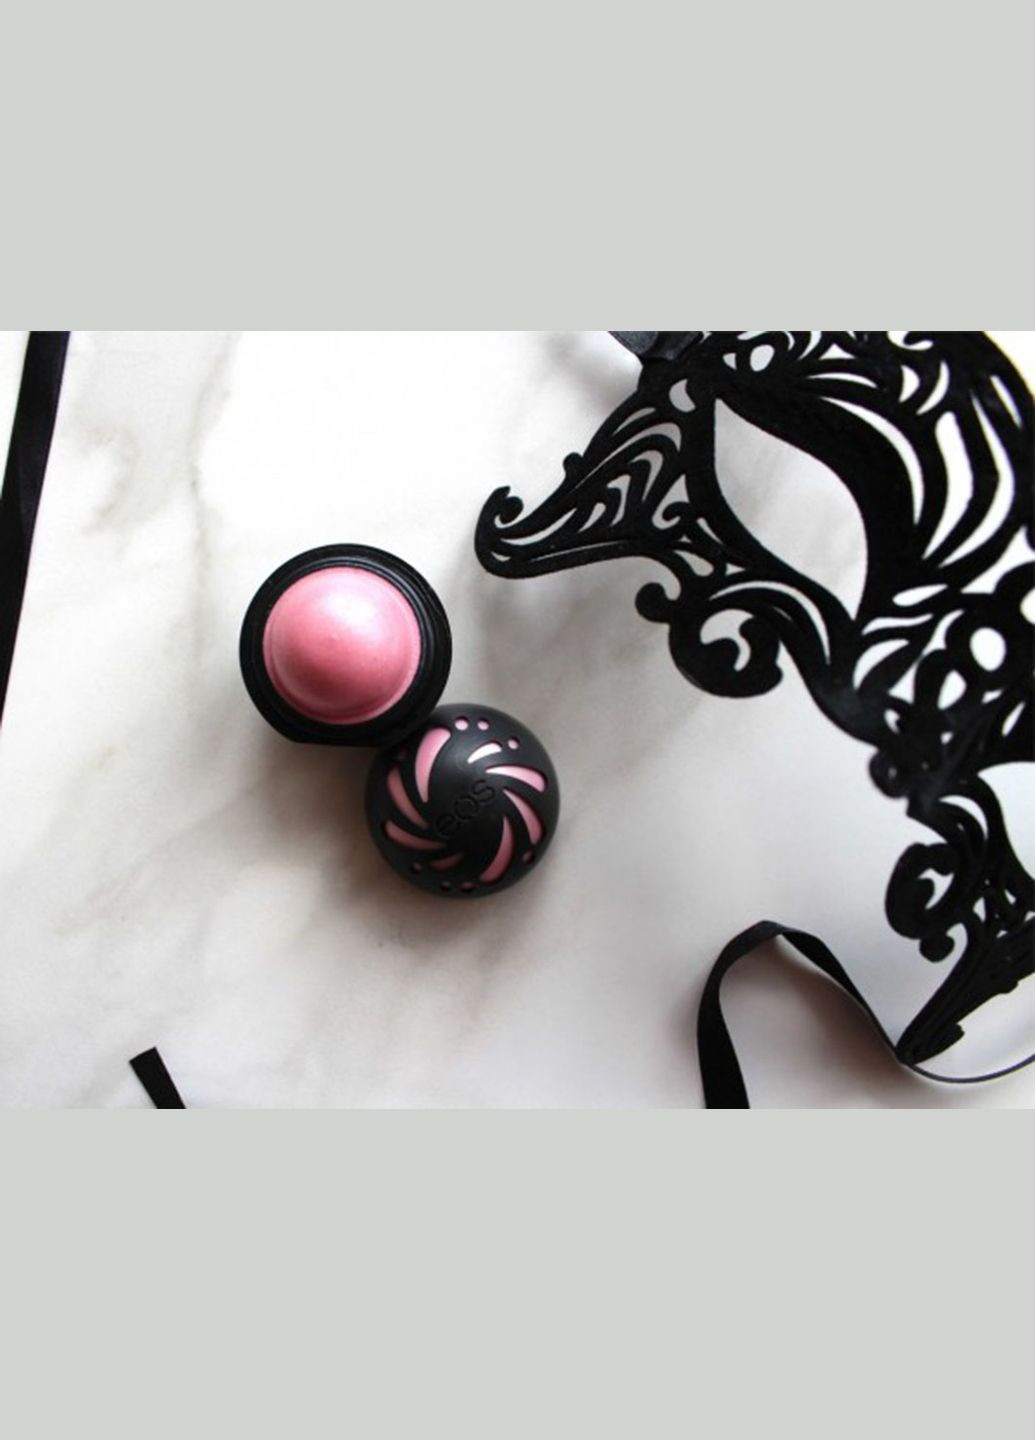 Бальзам для губ с шиммером Lip Balm Sphere Shimmer Sheer Pink Розовый (7 г) EOS (278773643)